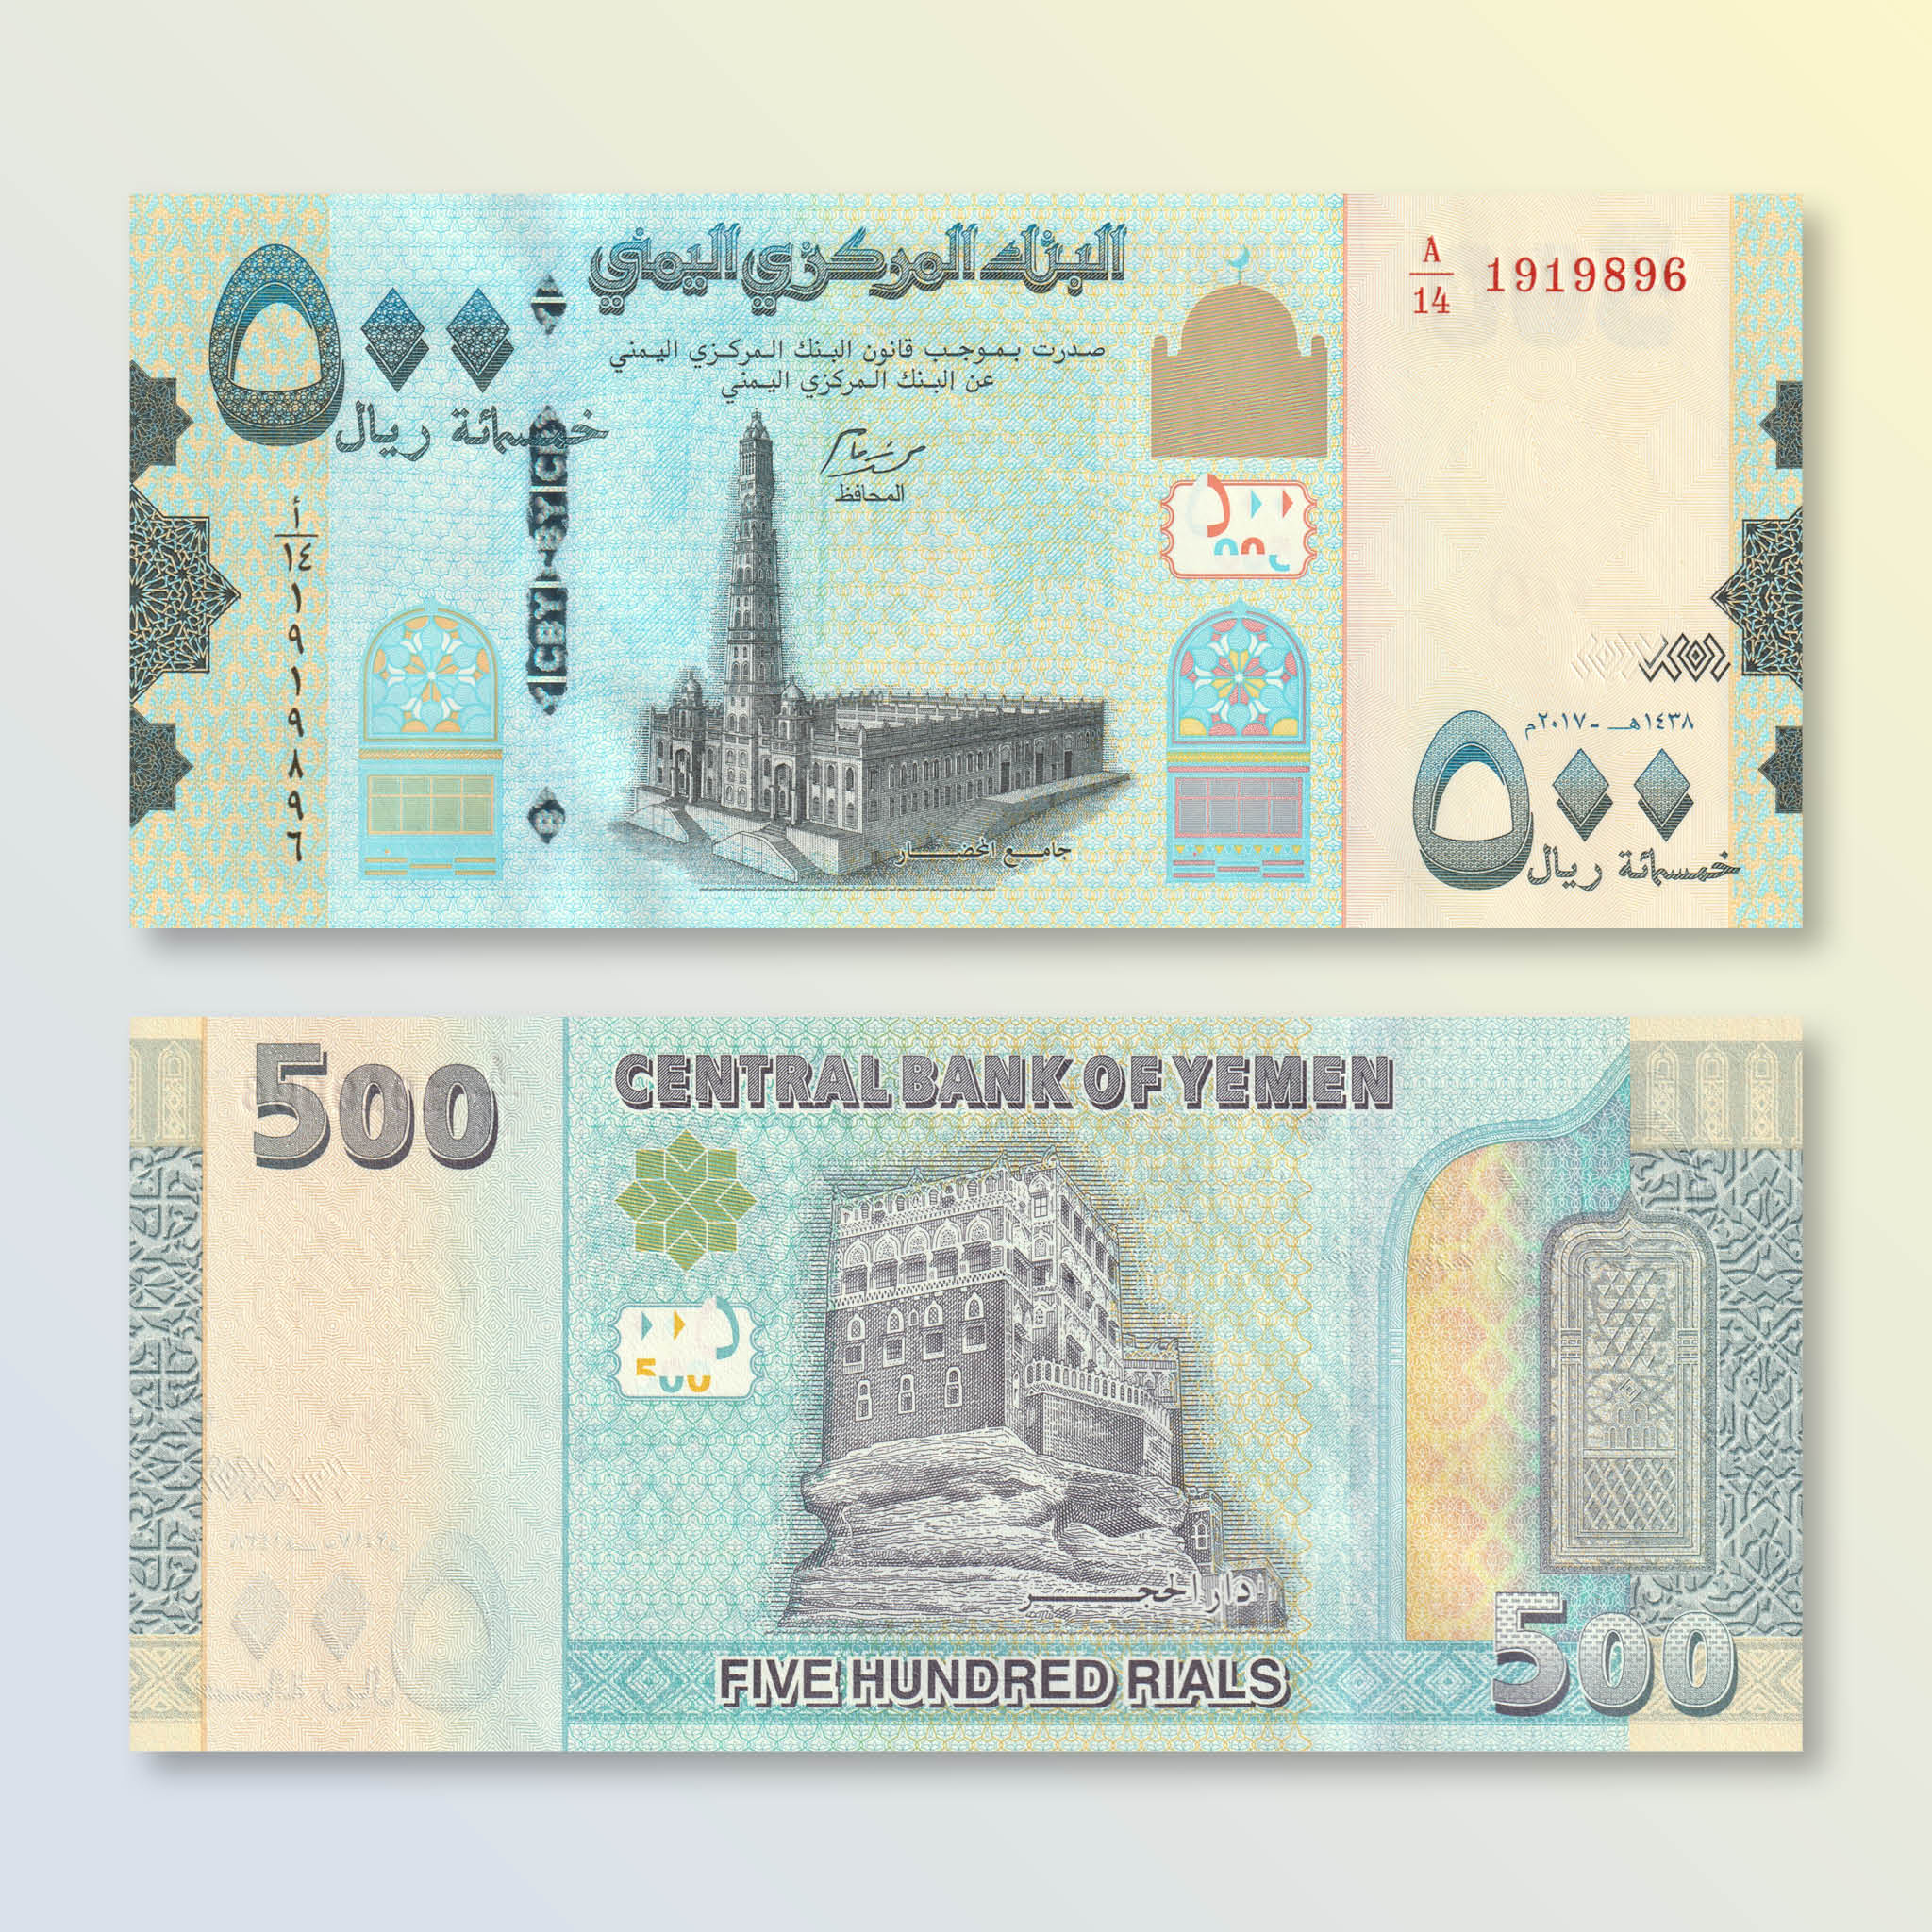 Yemen 500 Rials, 2017, B128b, P39, UNC - Robert's World Money - World Banknotes